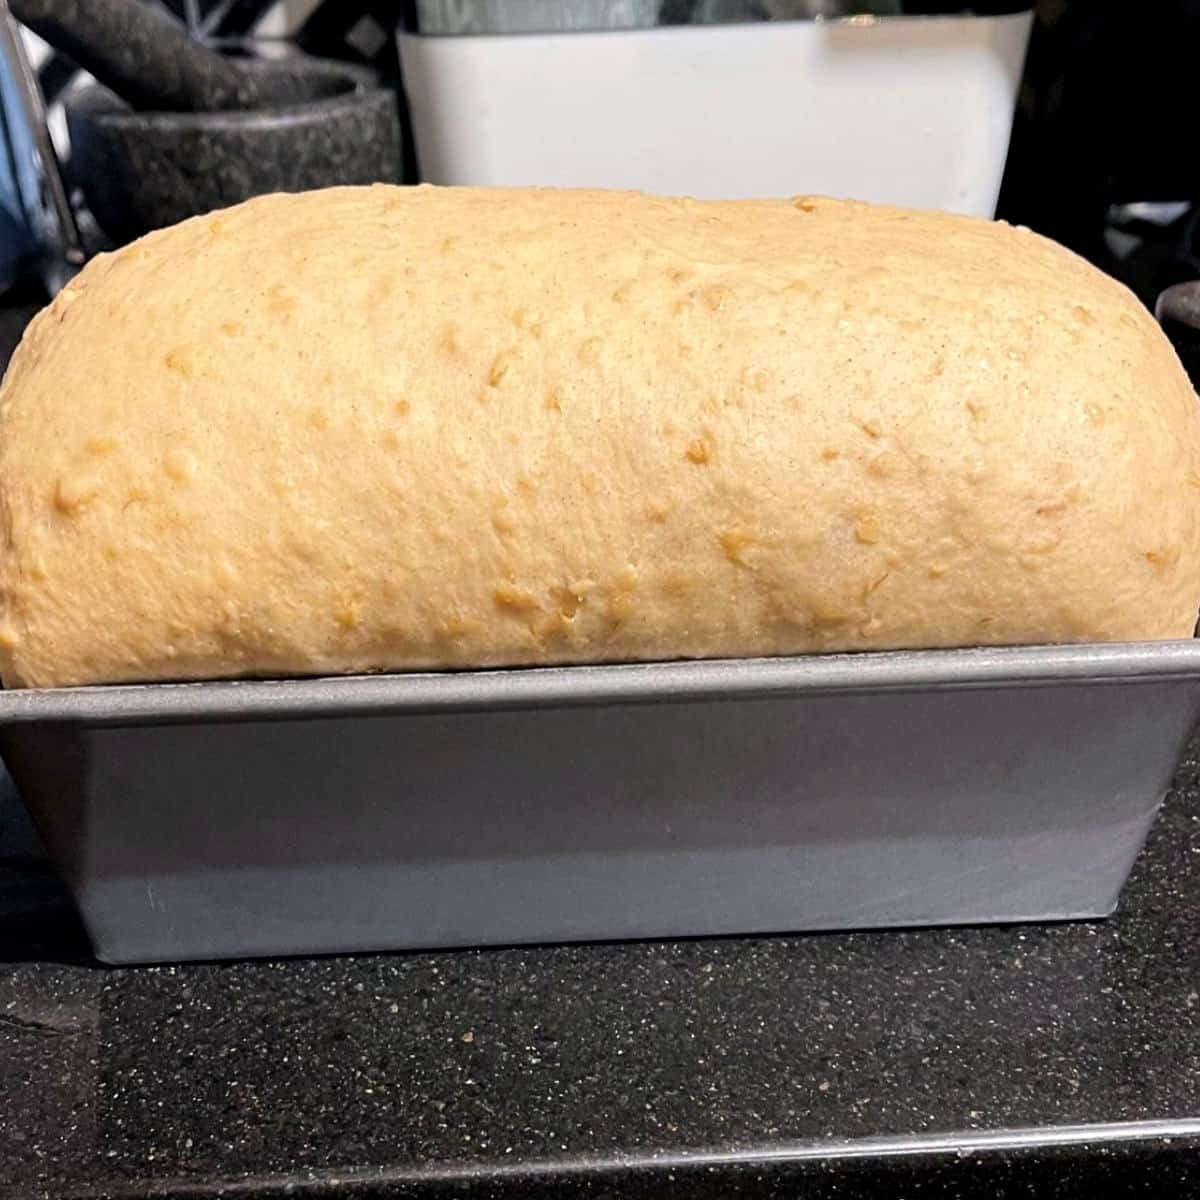 Risen loaf in loaf pan.